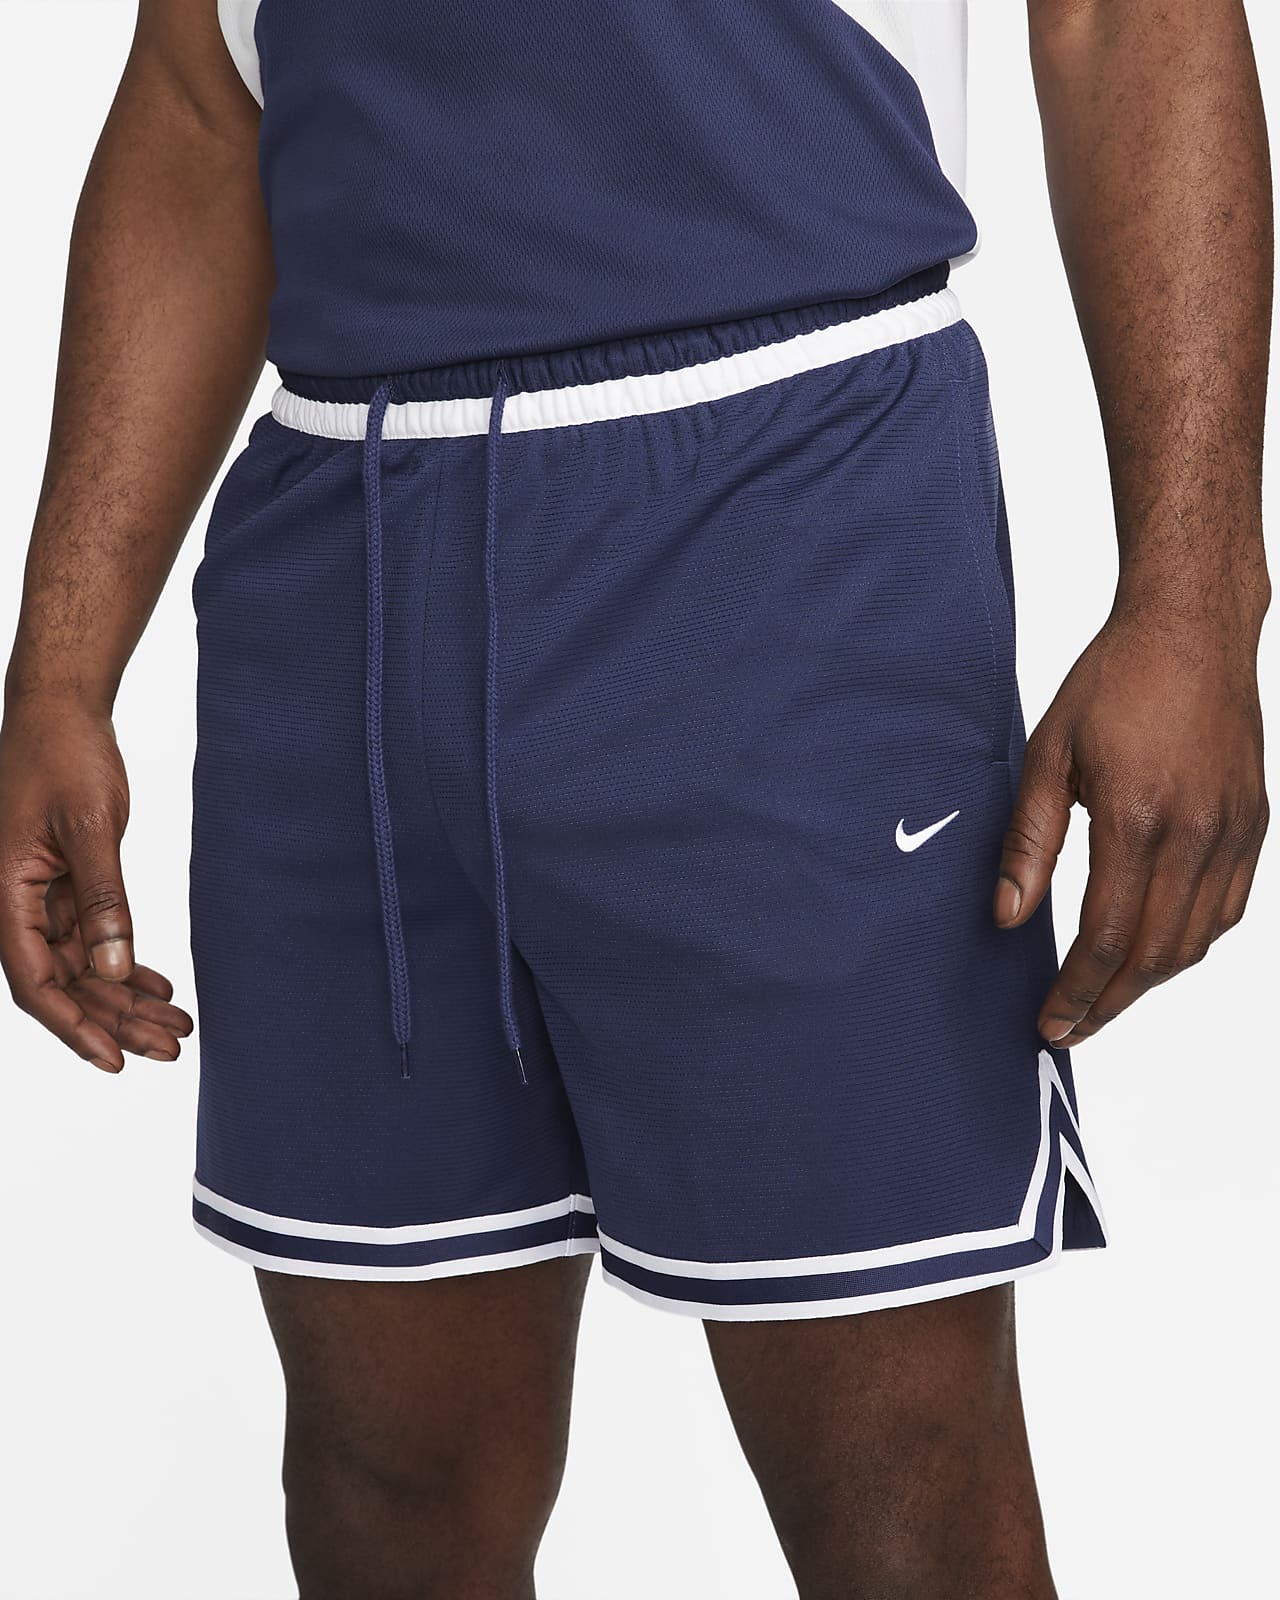 Débardeur de basketball Nike DNA Floral Noir pour homme